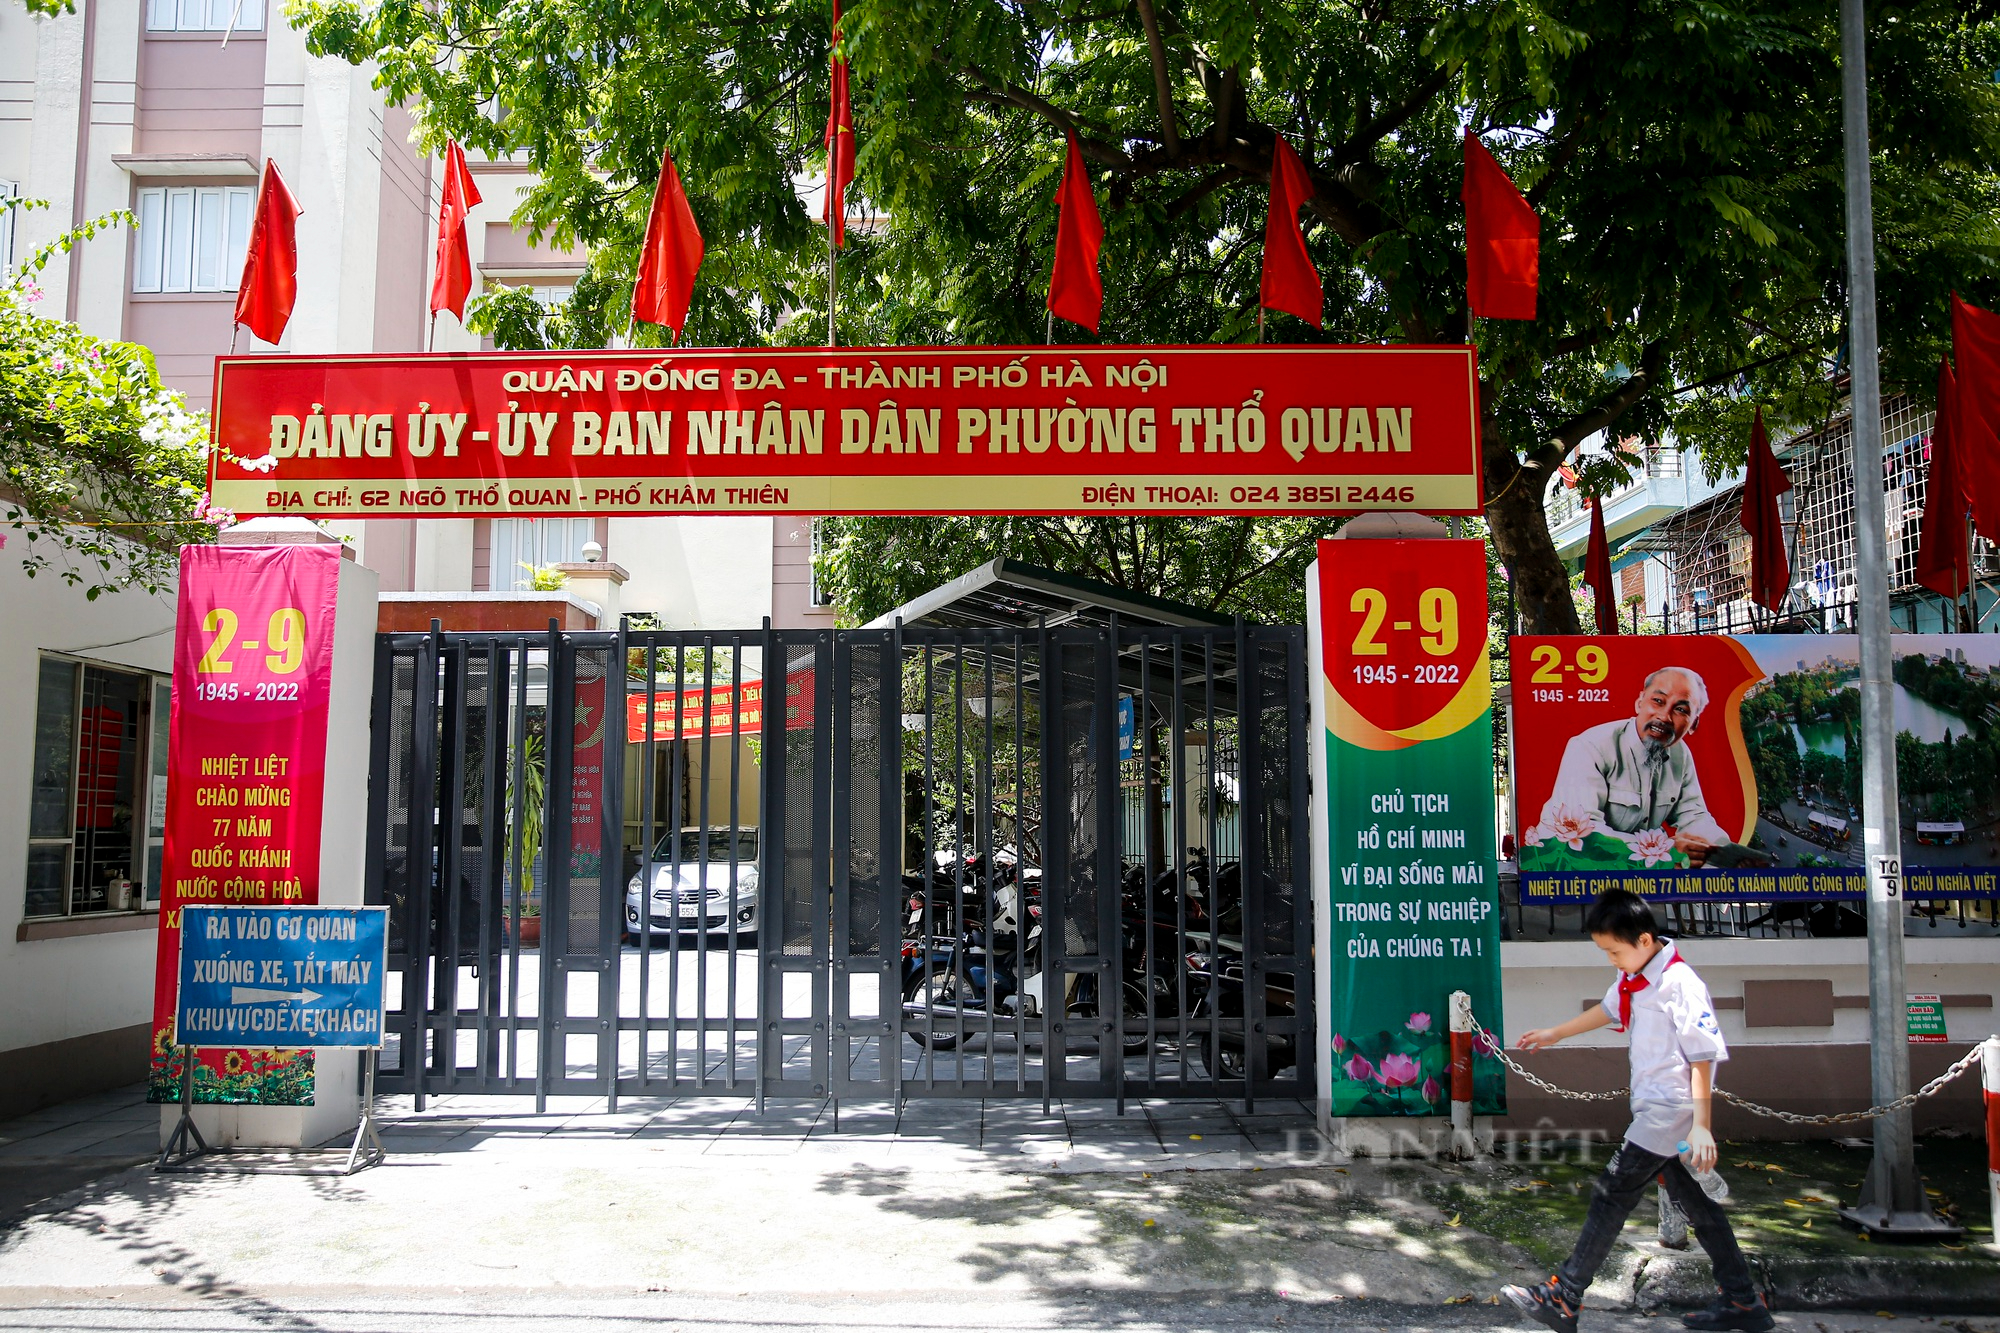 Đường phố Hà Nội rực màu cờ đỏ thắm chào mừng ngày Quốc khánh 2/9 - Ảnh 16.